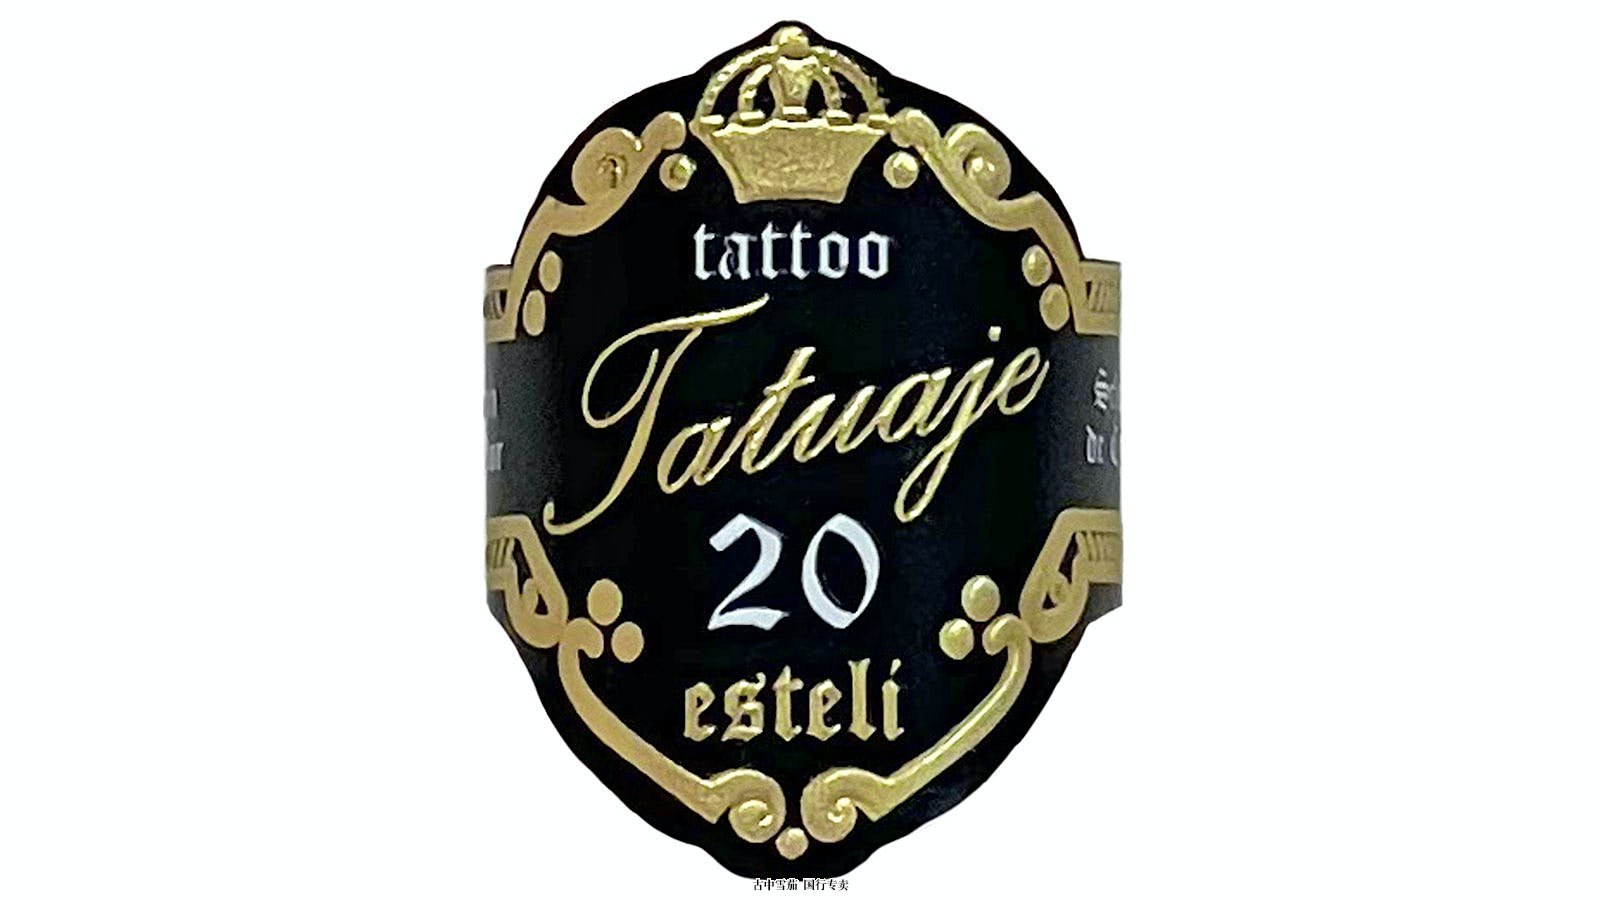 Tatuaje 推出两款新烟庆祝 20 岁生日